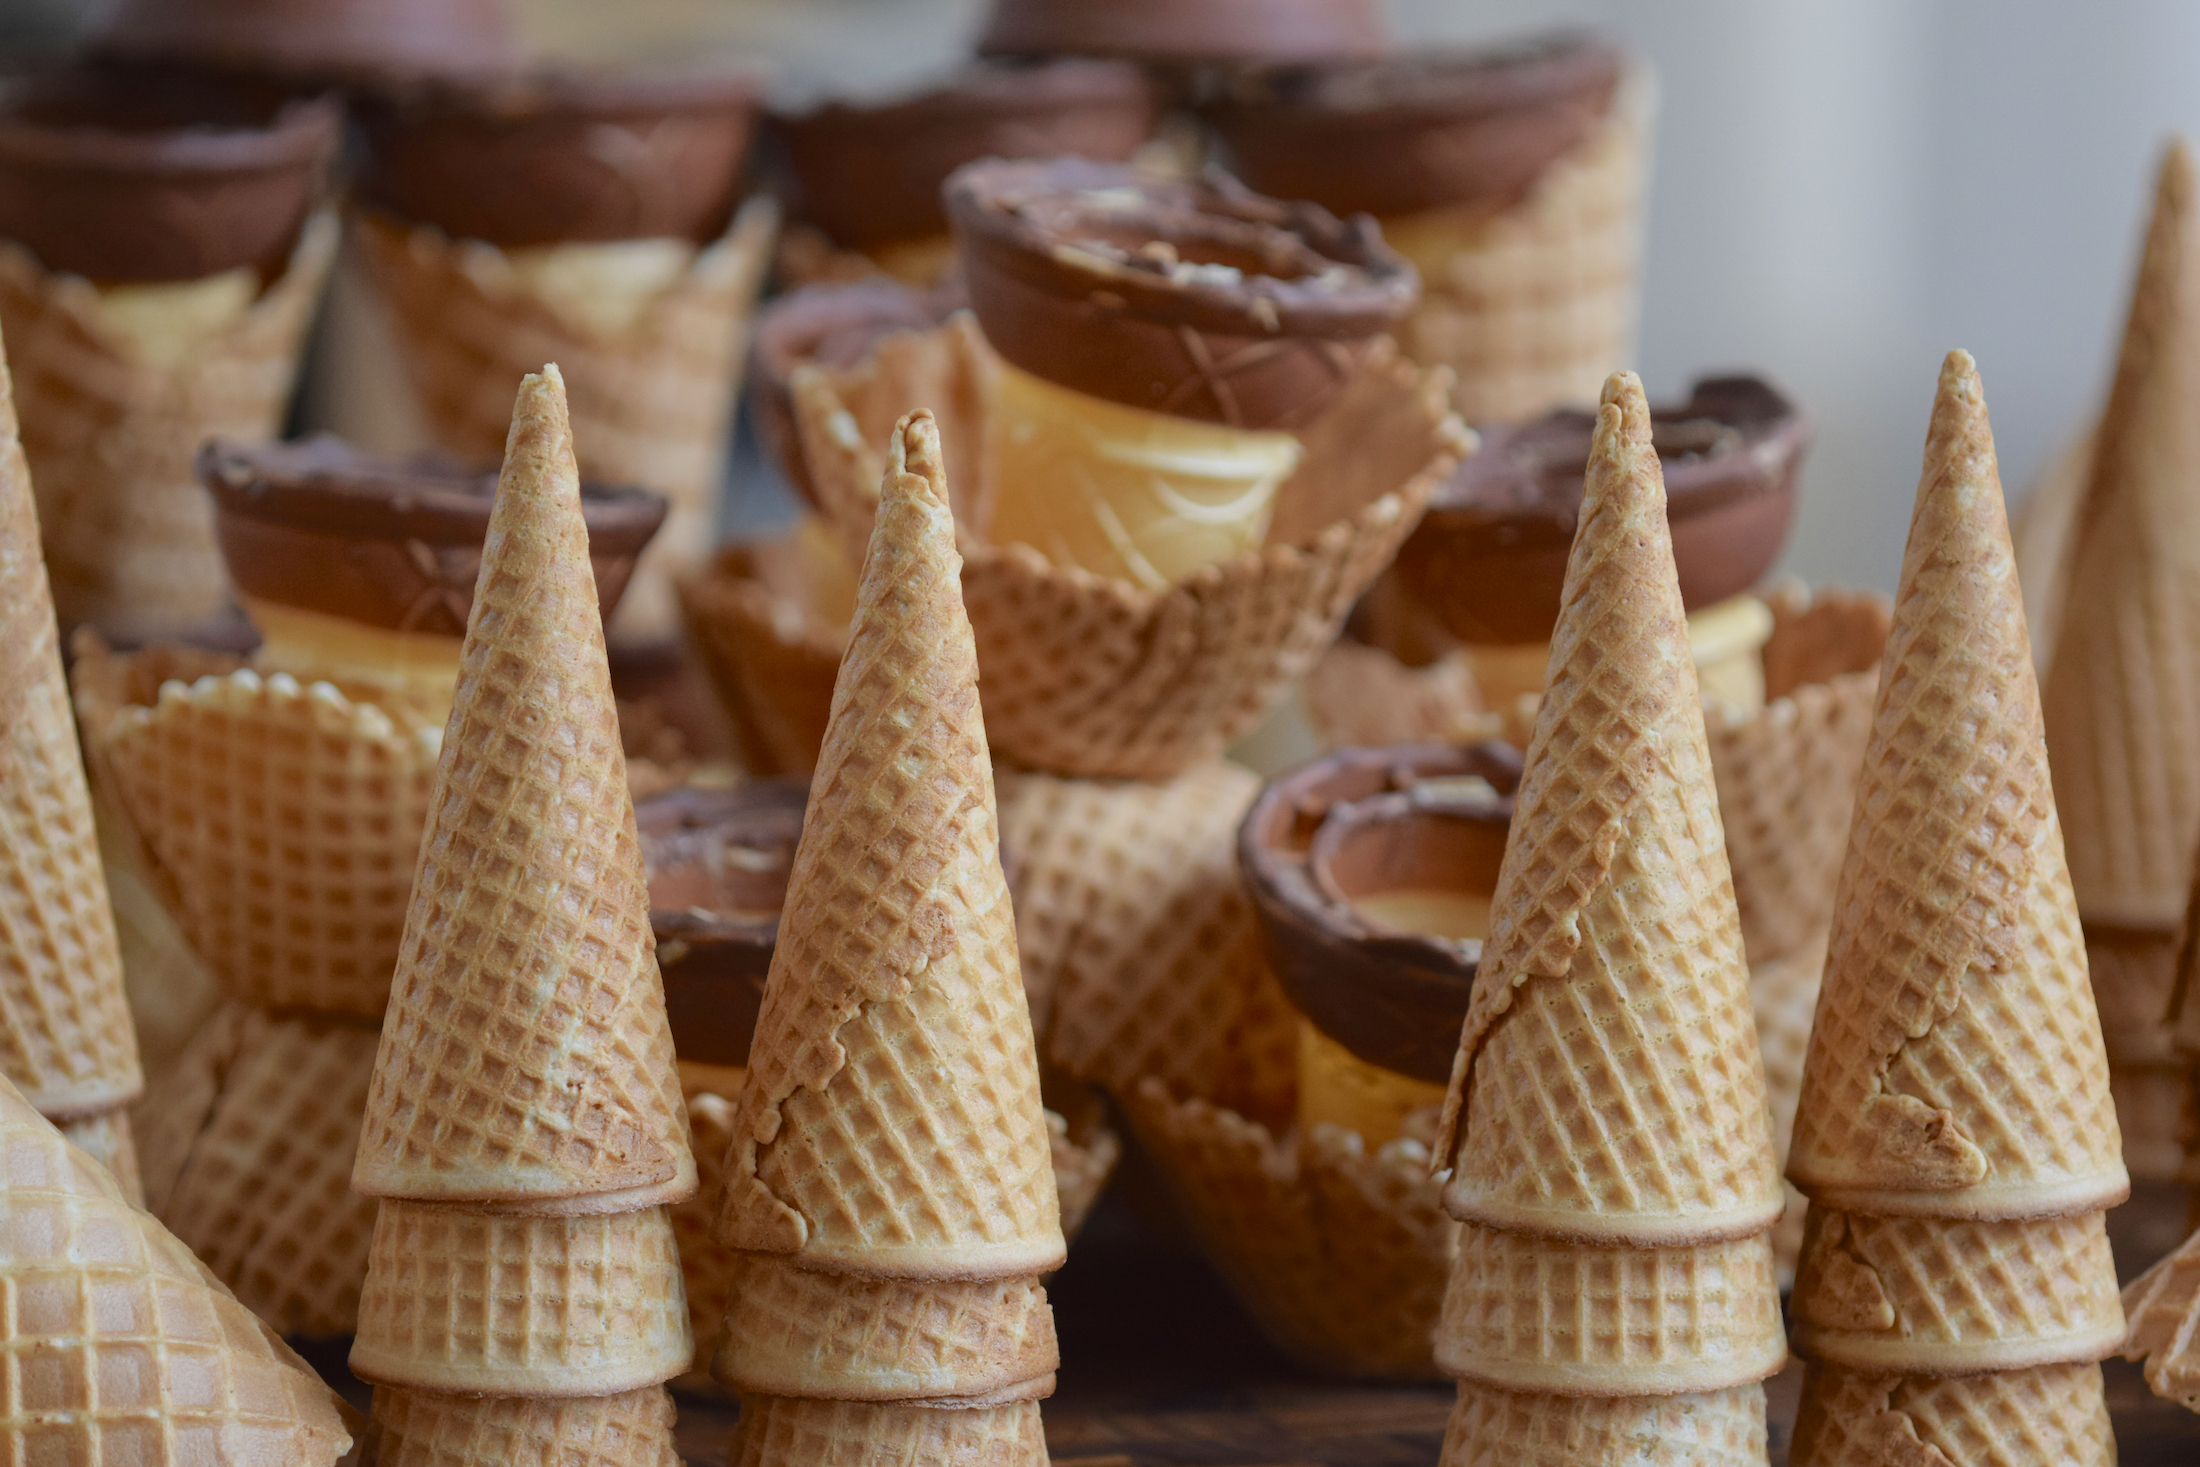 Sample Ice Cream Cones